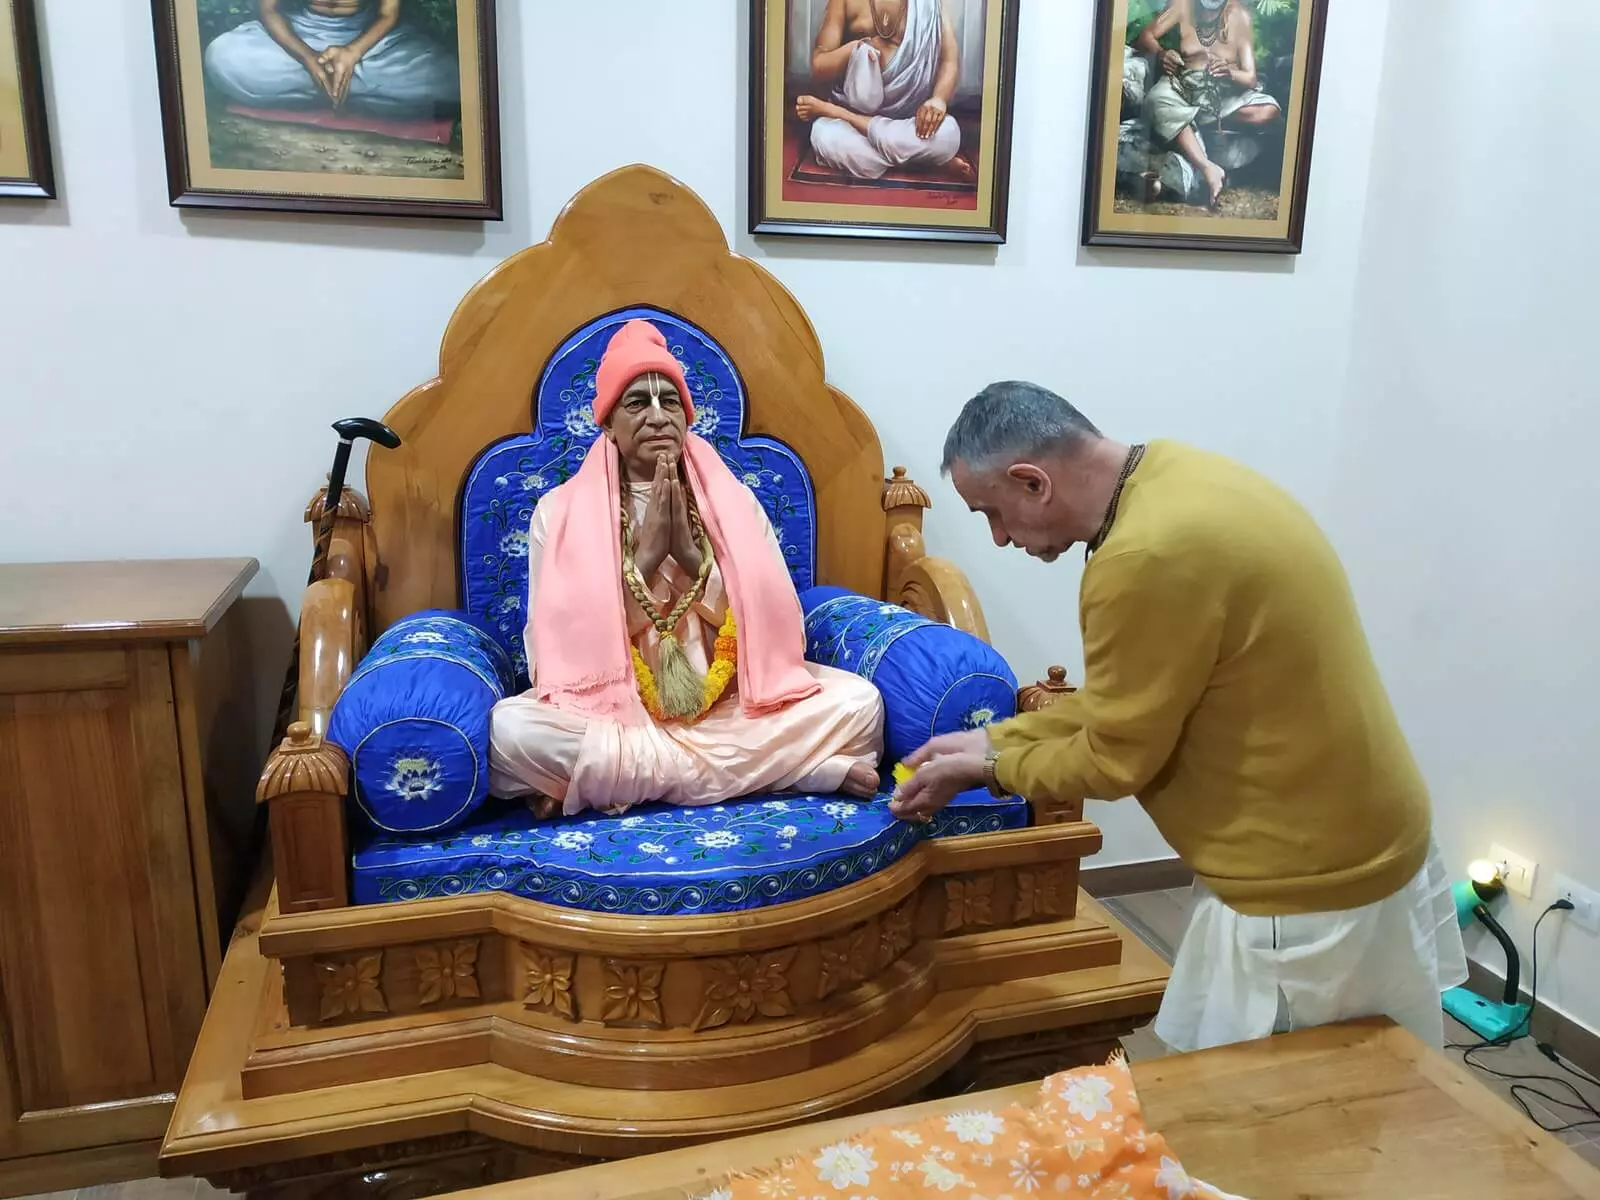 我重返 TOVP - Sadbhuj prabhu 在圣帕布帕德's new murti 前鞠躬